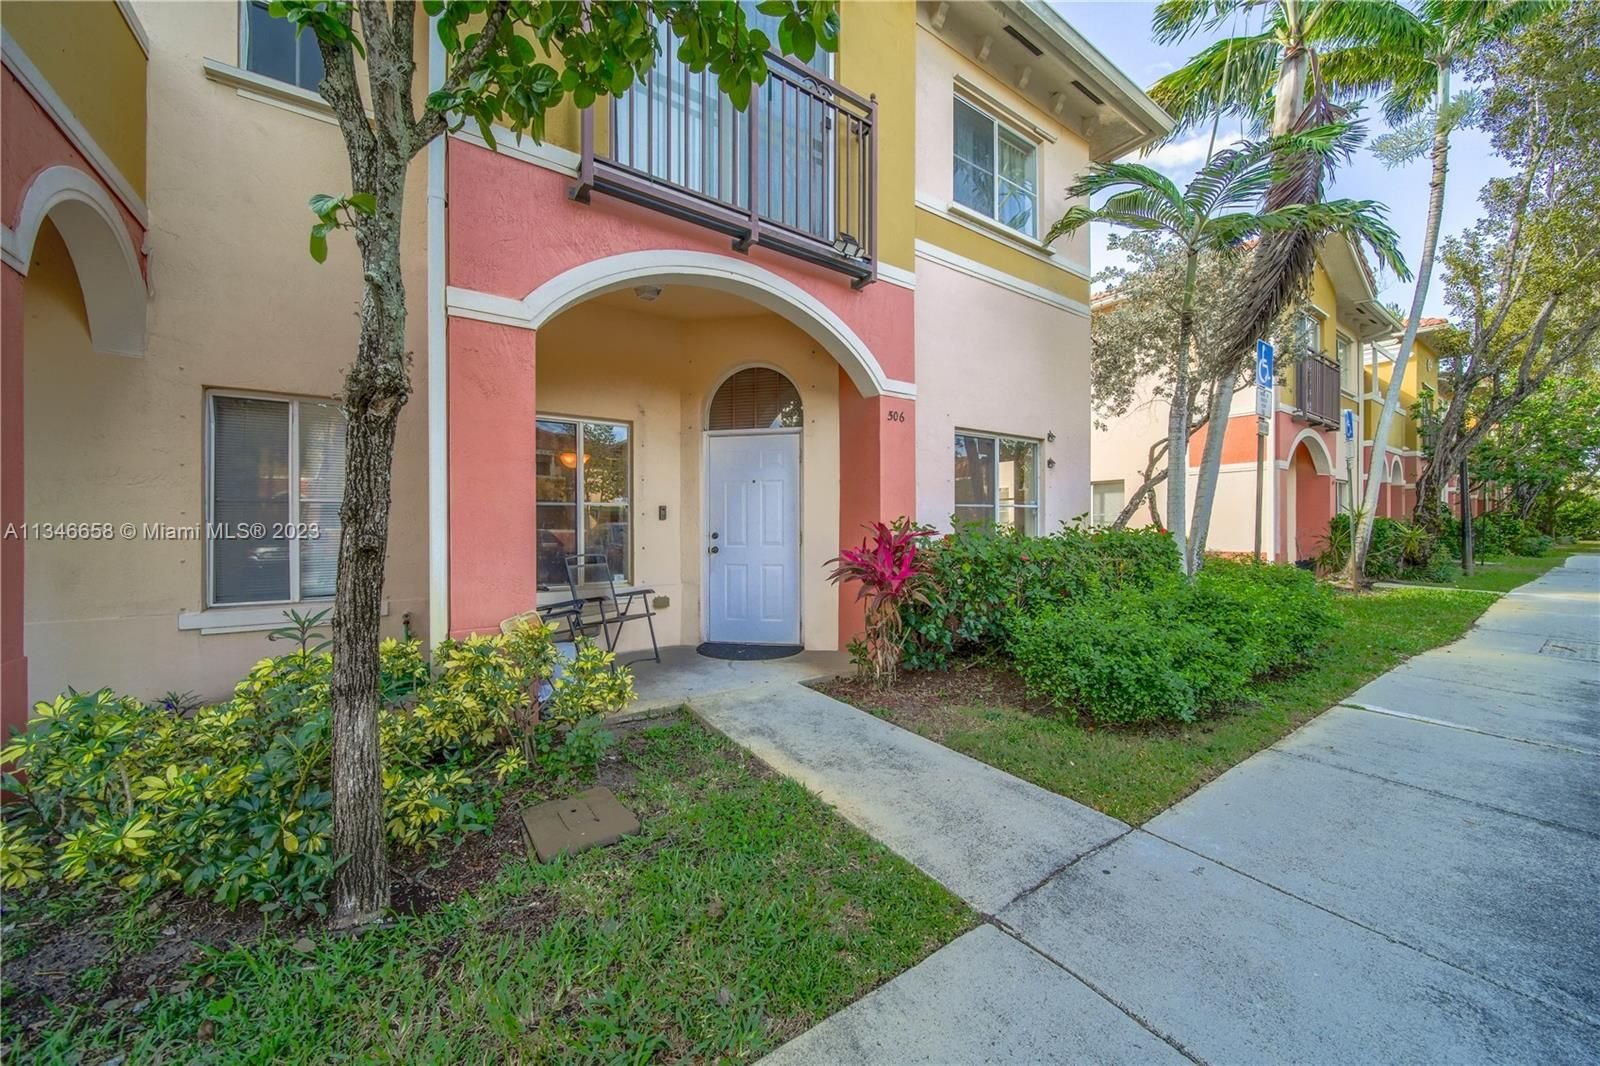 Real estate property located at 506 Santa Catalina Cir #0, Broward County, North Lauderdale, FL